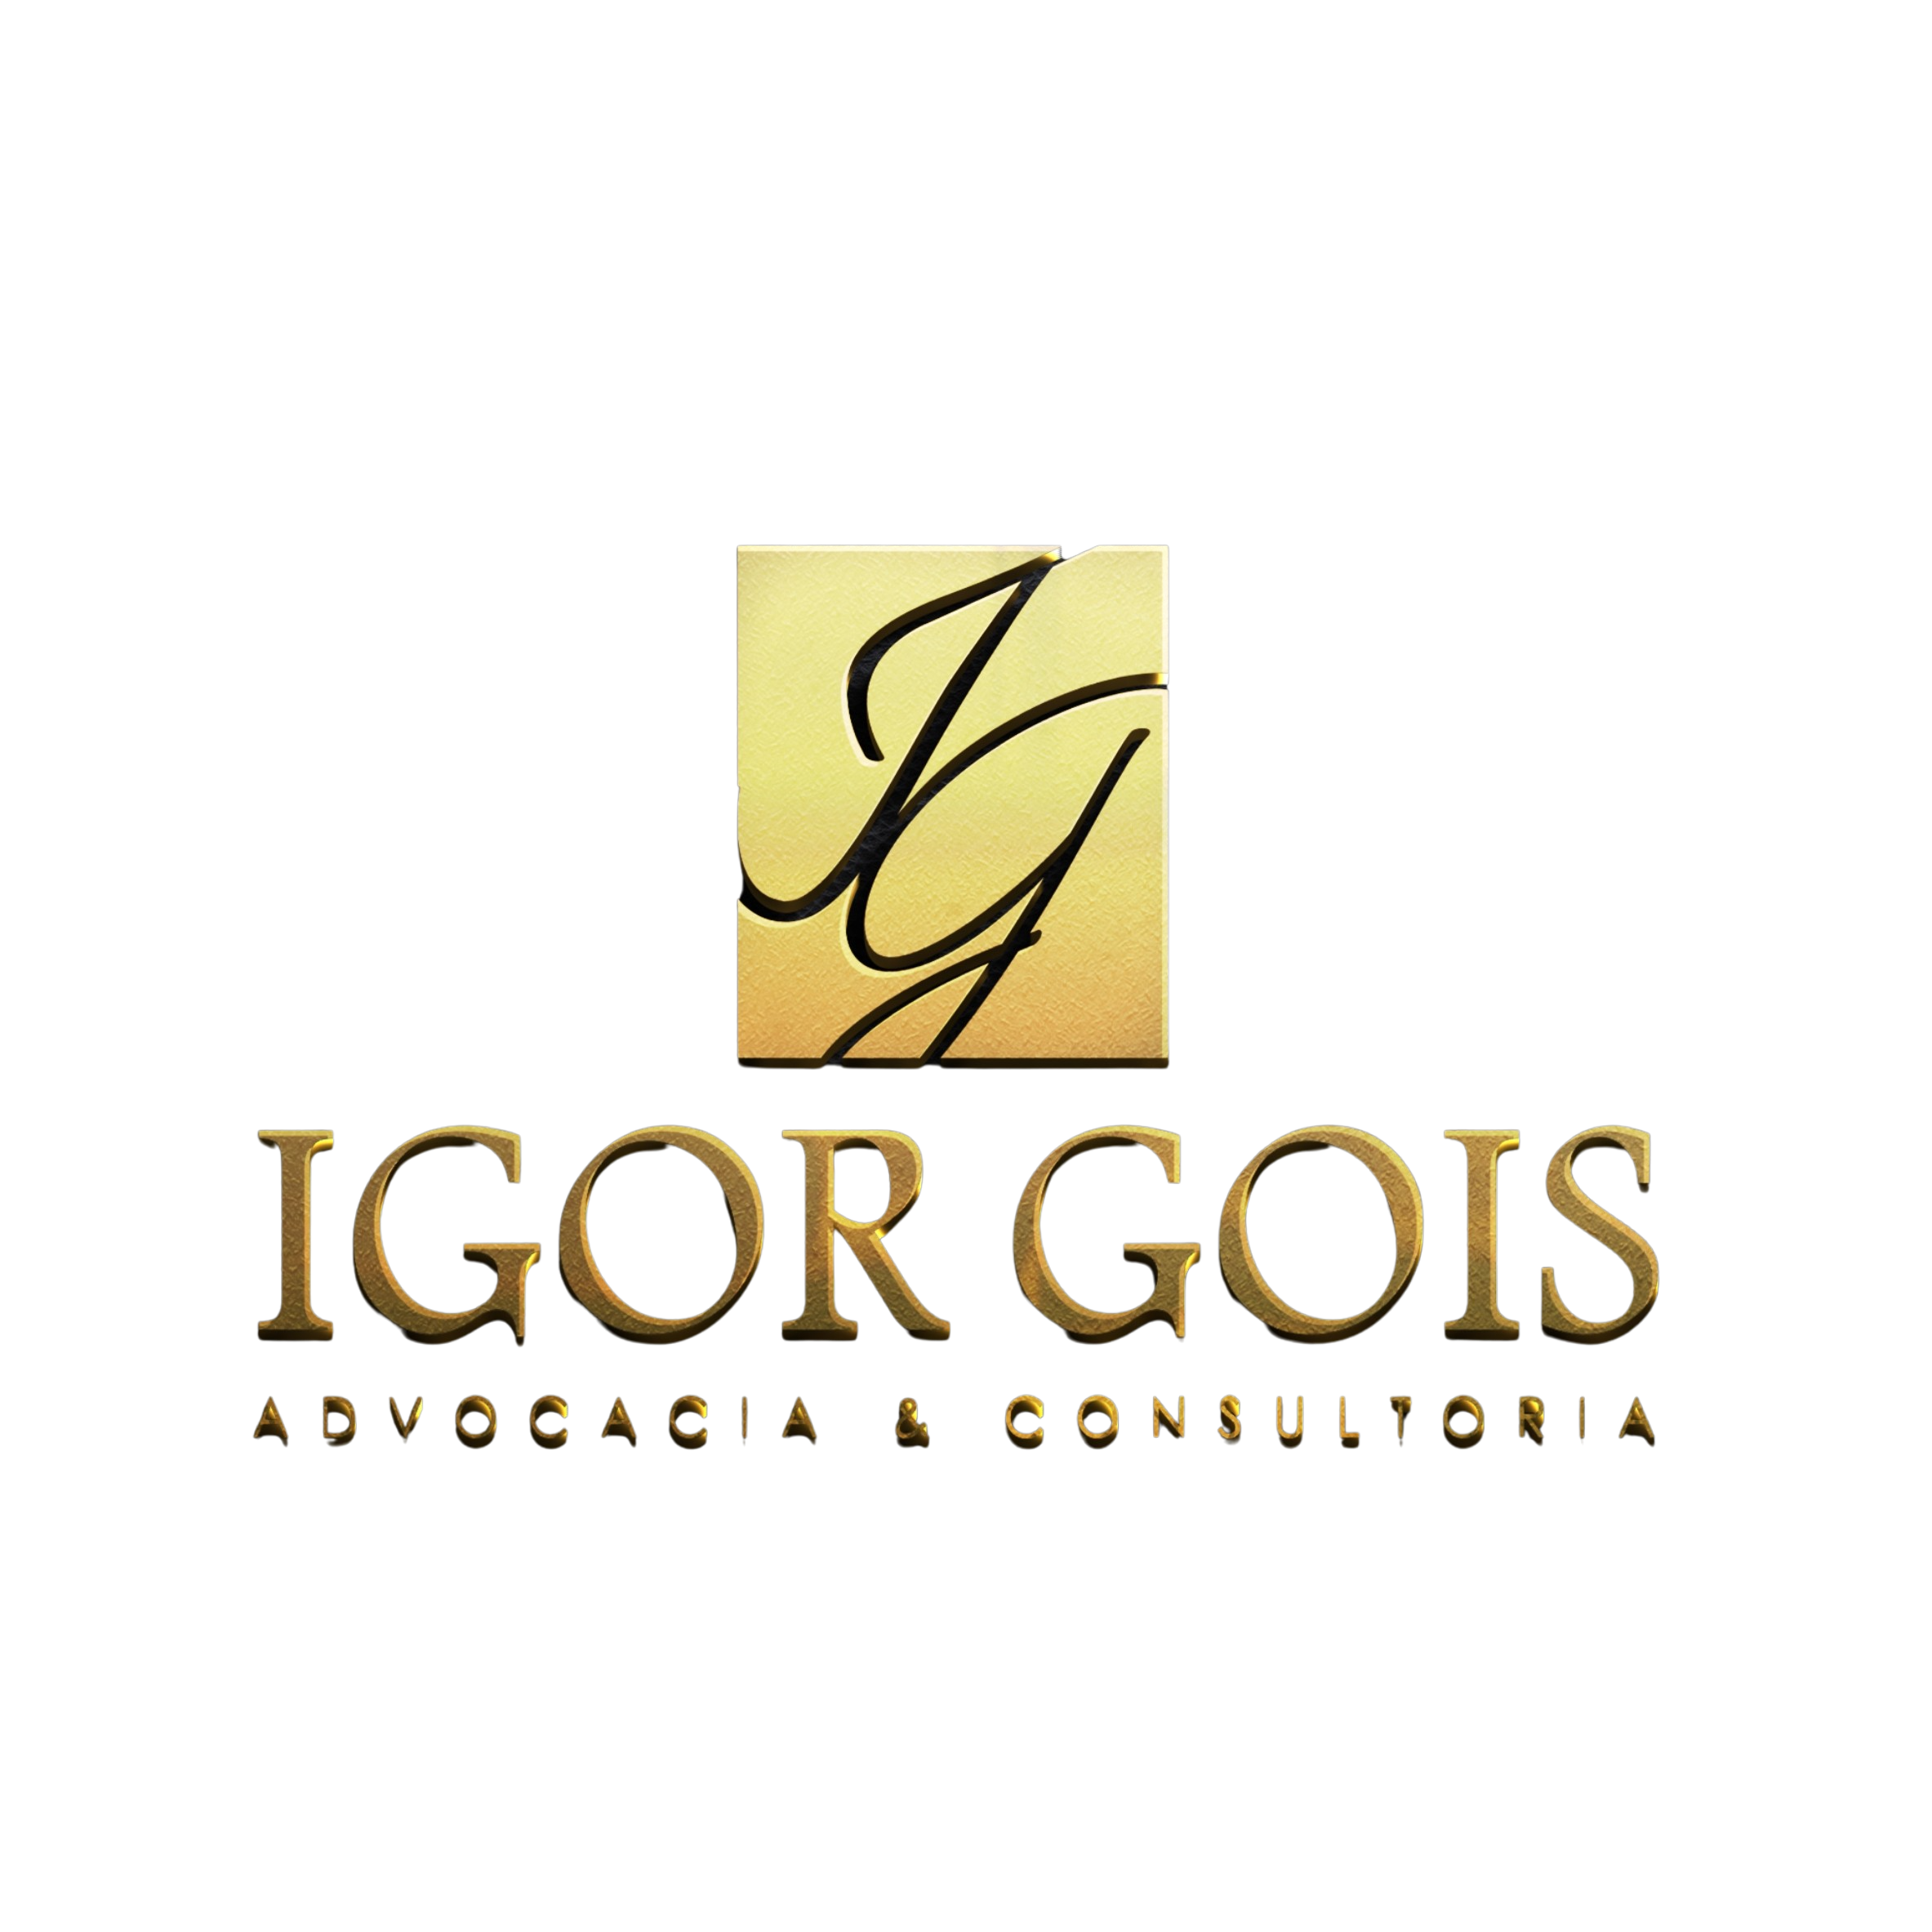 Igor Gois Advocacia & Consultoria